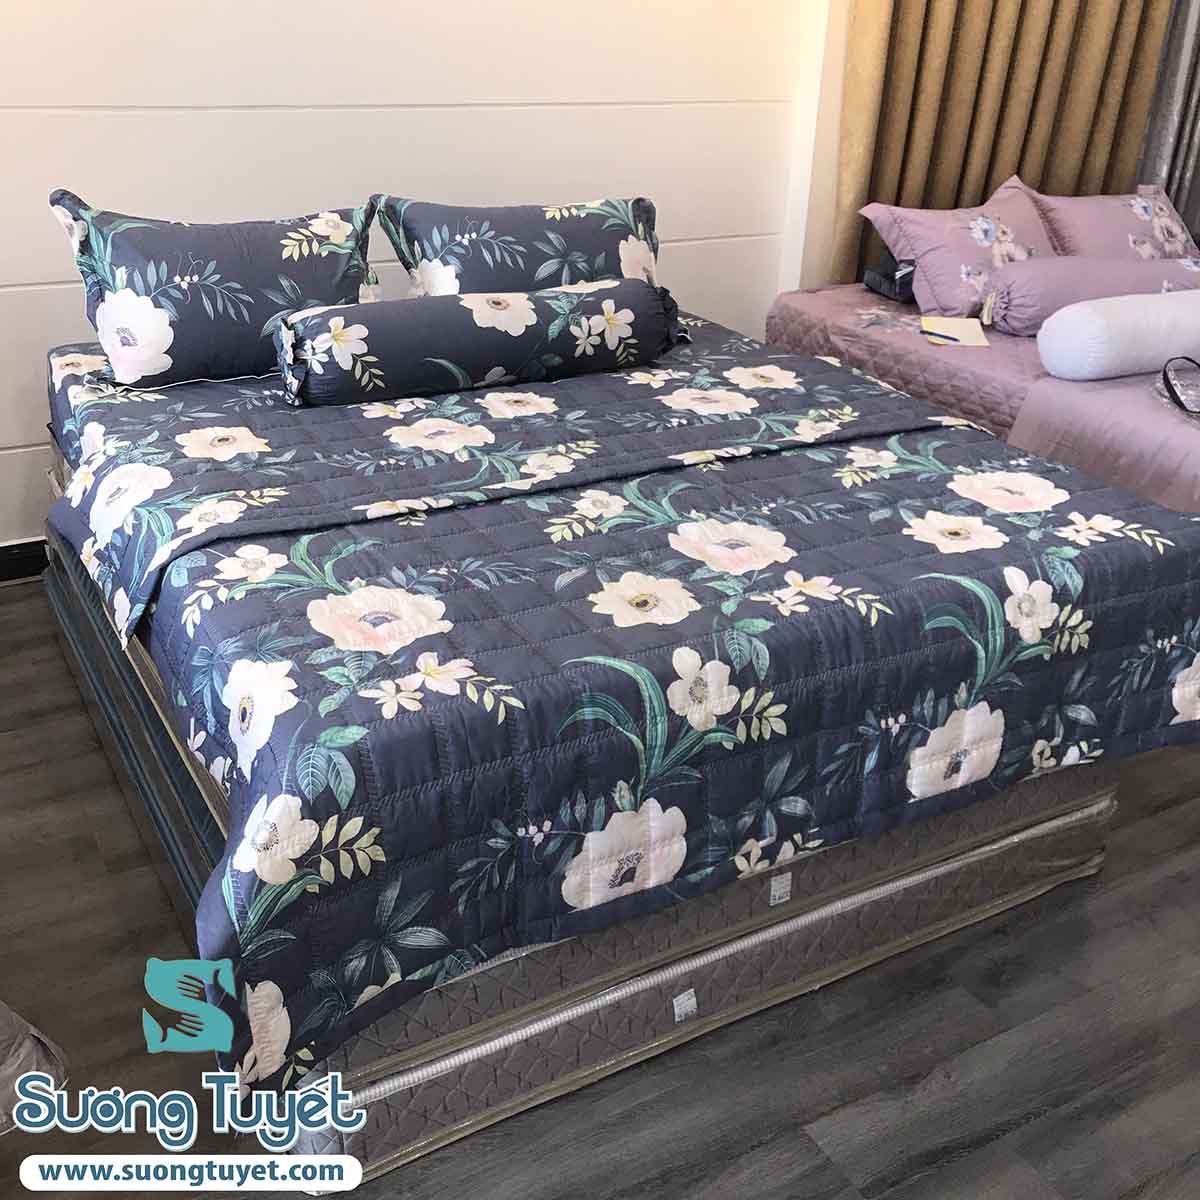 ga giường cotton màu xanh hình hoa hồng đà nẵng